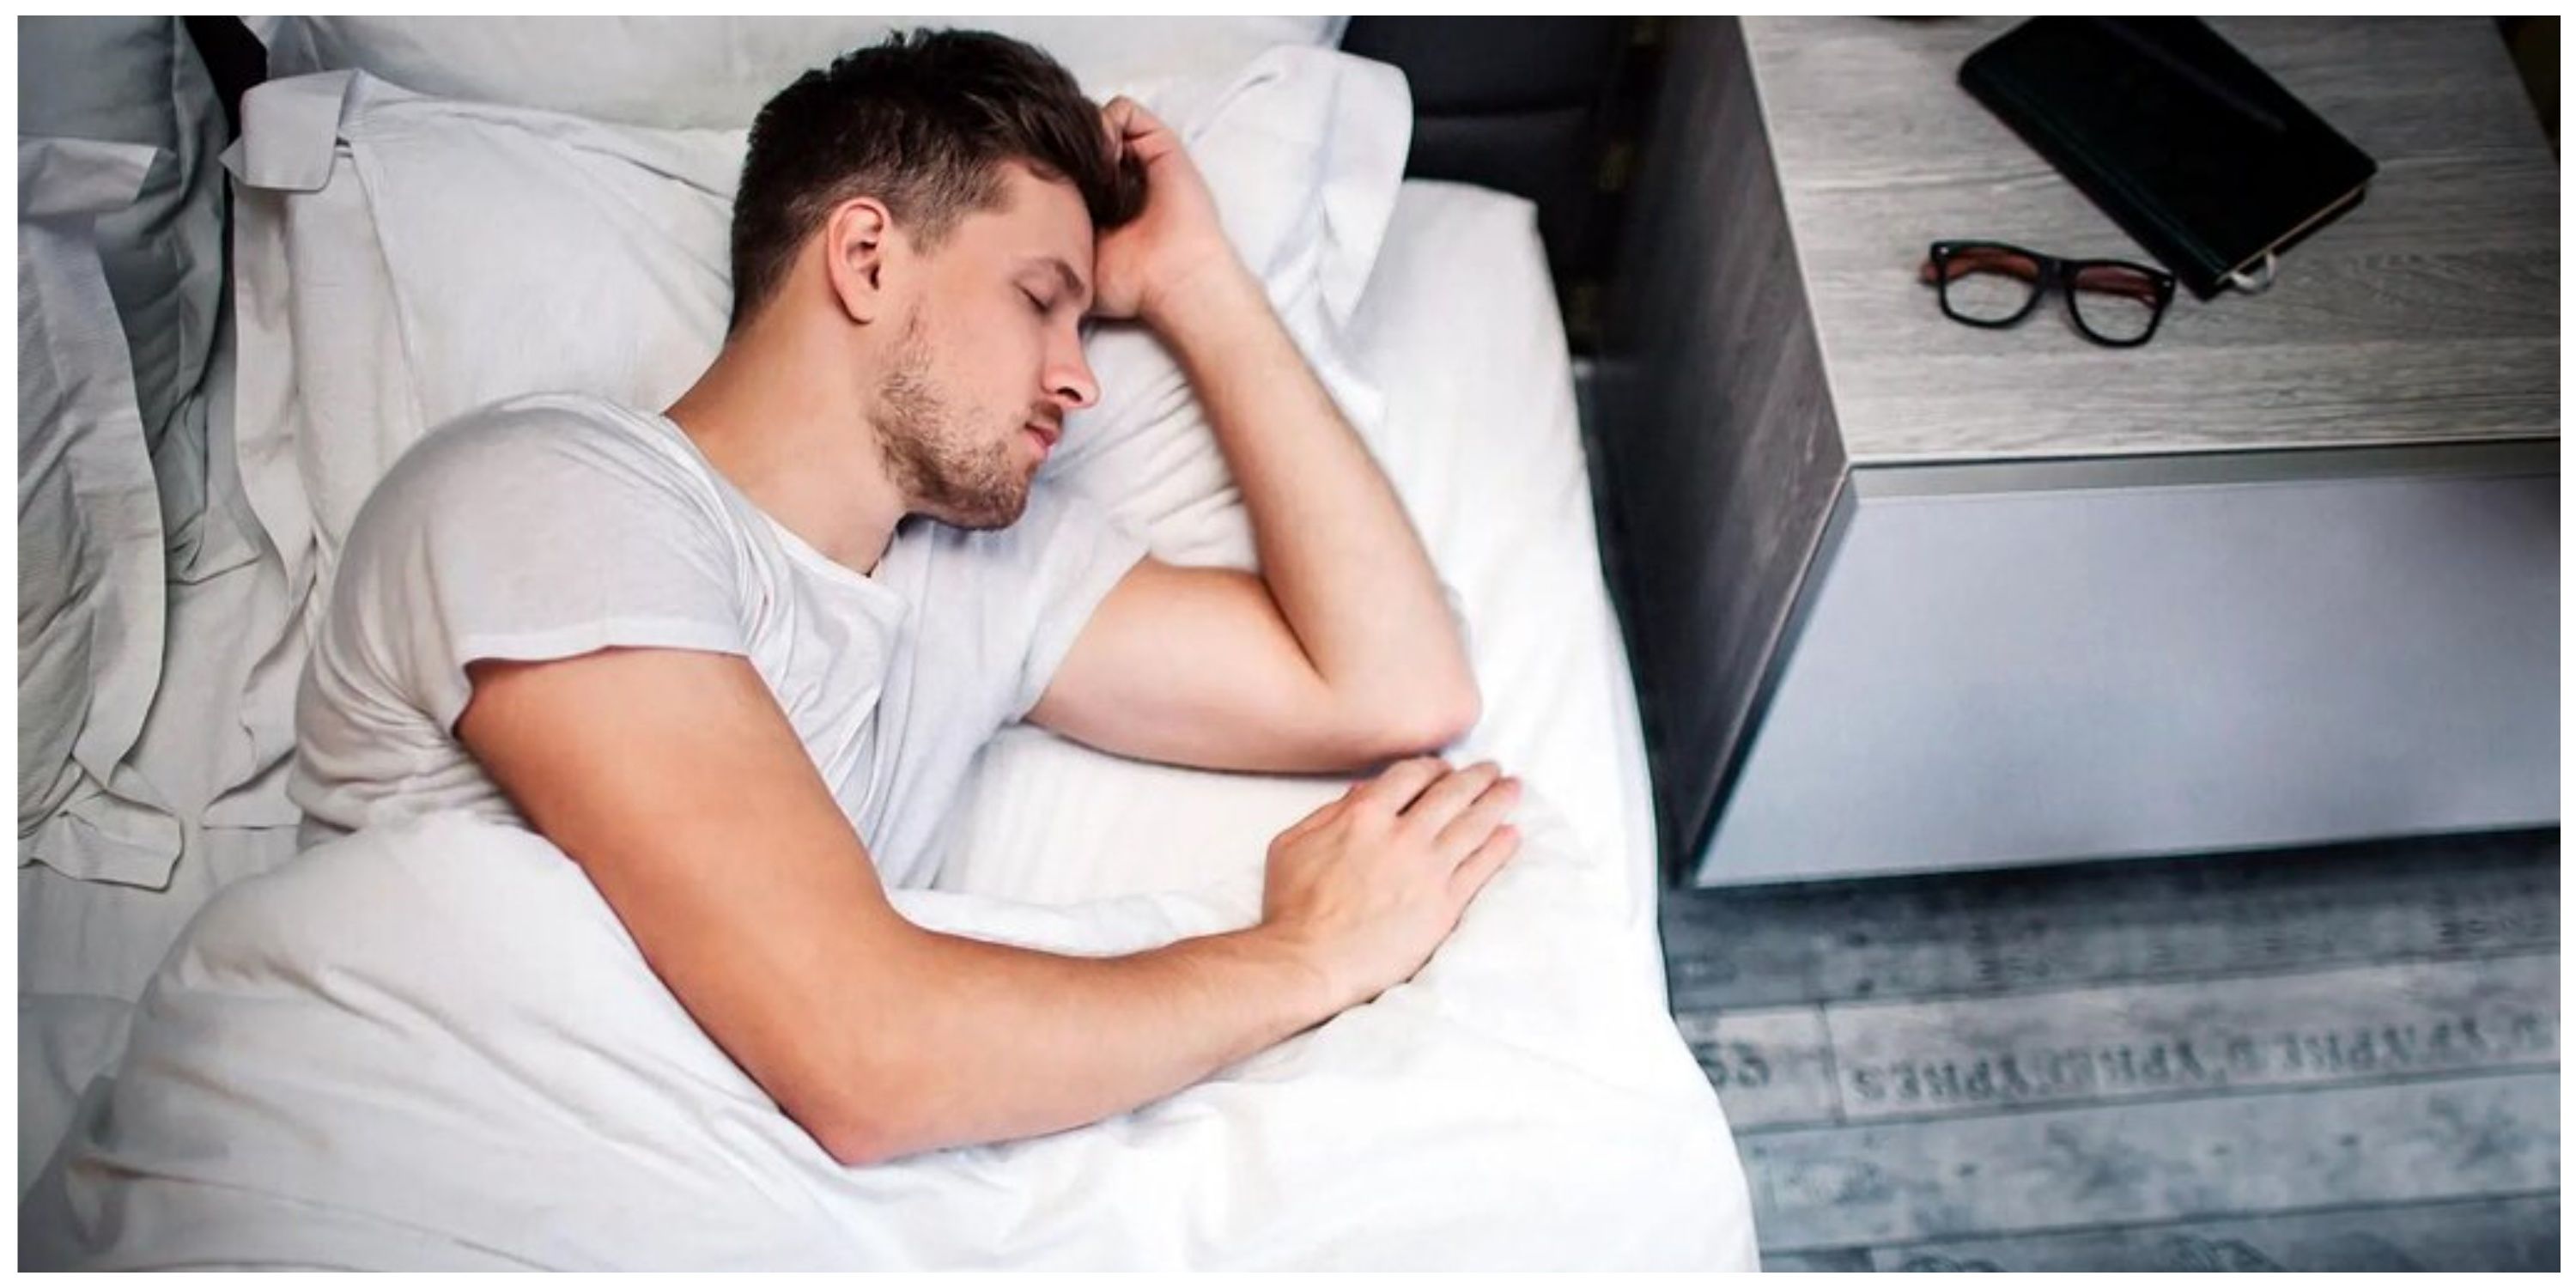 5 علامت خطرناک هنگام خواب؛ اگر این مشکلات را دارید، فورا به پزشک مراجعه کنید